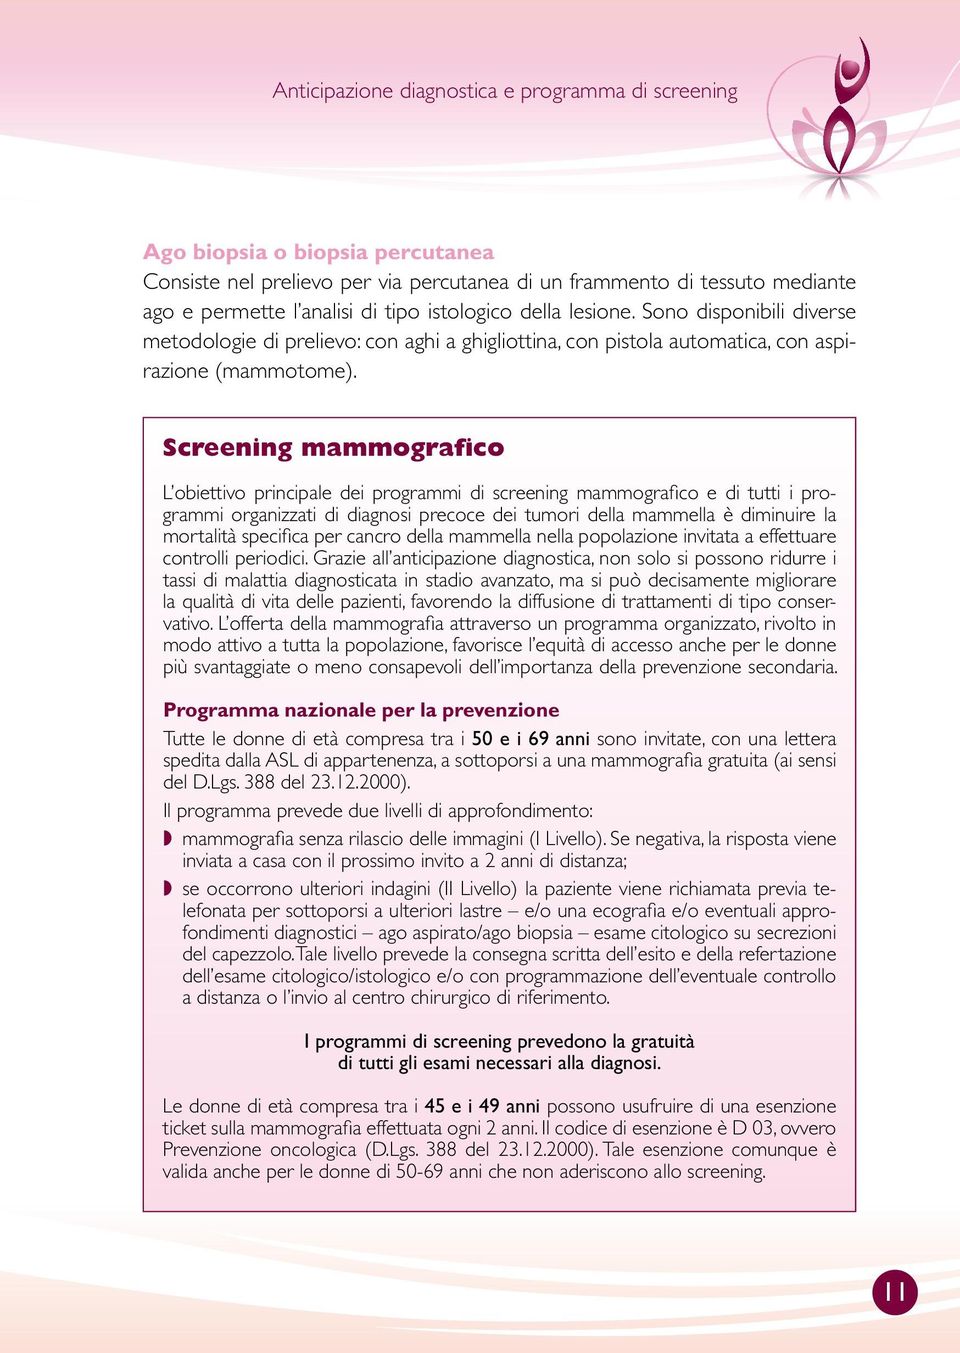 Screening mammografico L obiettivo principale dei programmi di screening mammografico e di tutti i programmi organizzati di diagnosi precoce dei tumori della mammella è diminuire la mortalità